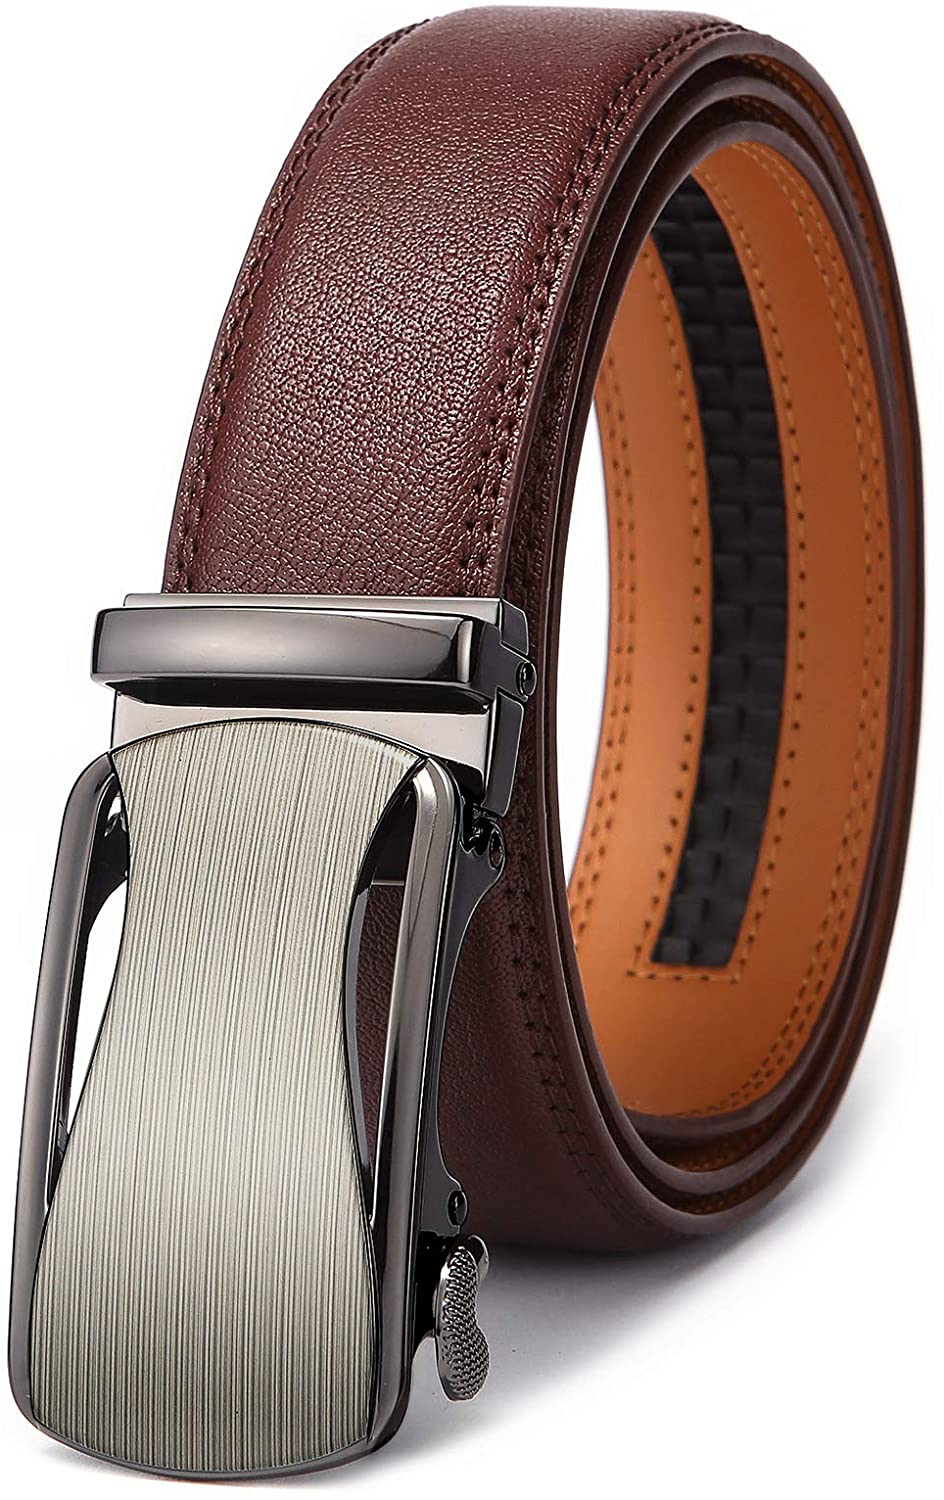 Zitahli Mens Belt Leather 2 Pack - Ratchet Belt for Men Dress Pant Shirt Oxfords,Micro Adjustable Brown Belt,Trim to Fit